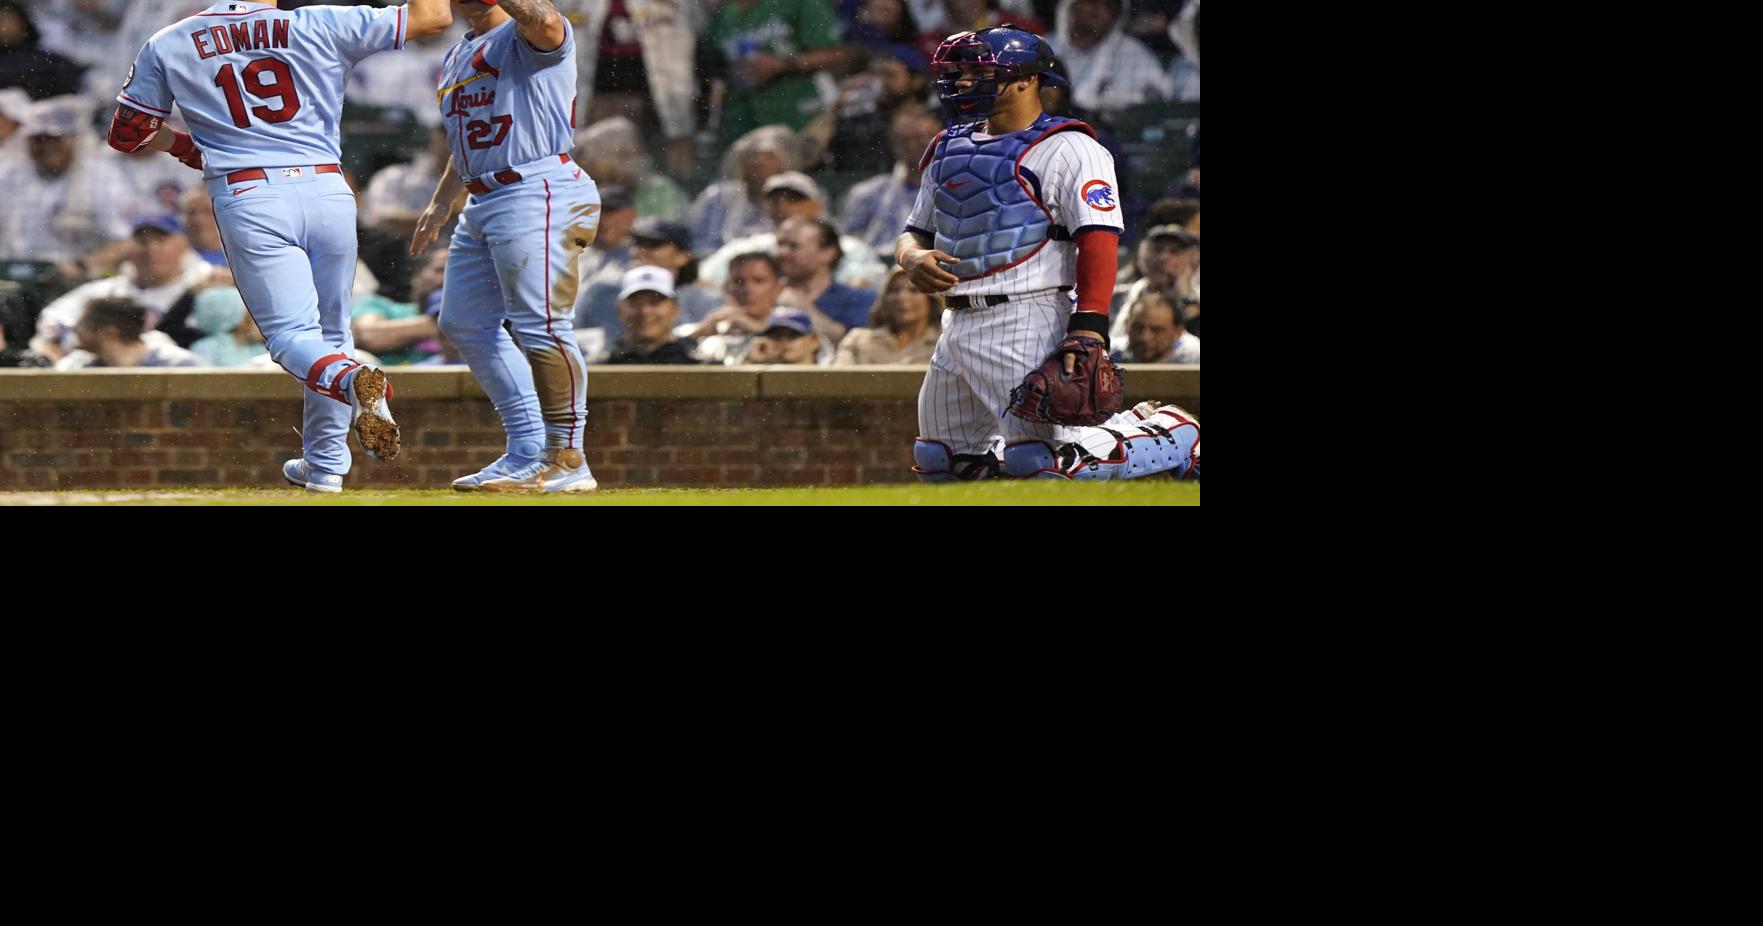 I-Cubs catcher Willson Contreras still waiting for big league shot